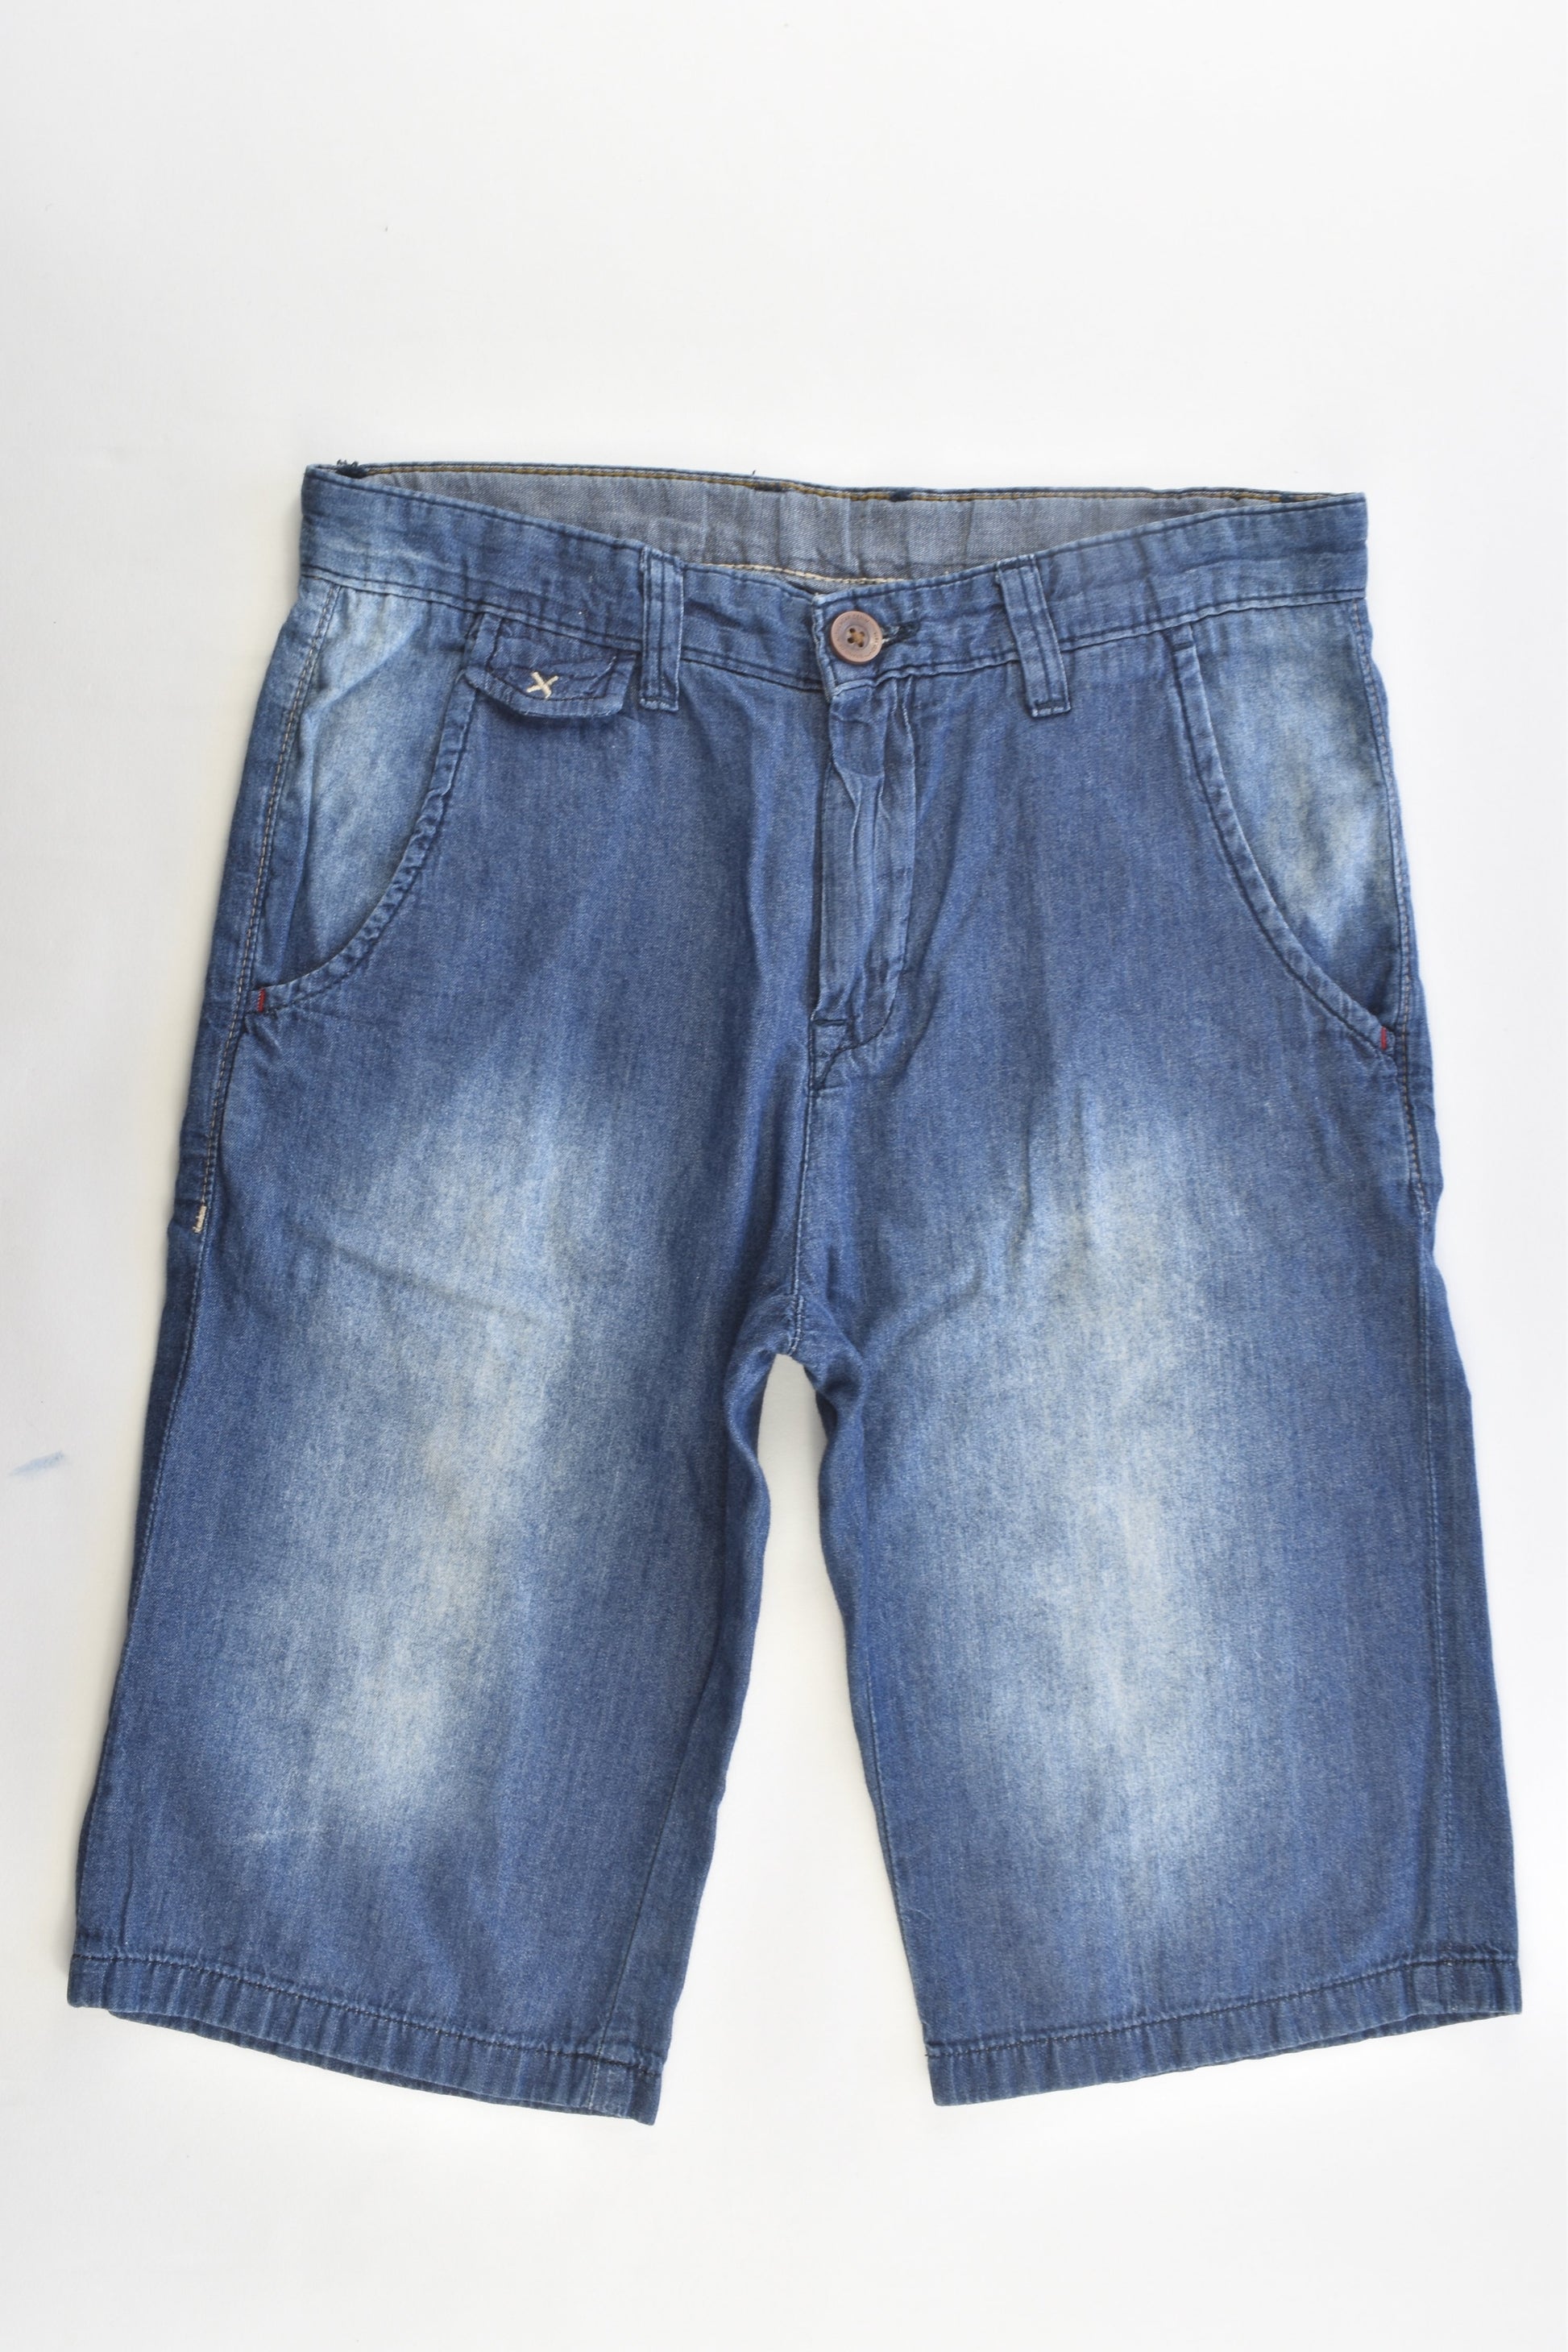 Zara Kids Size 9-10 (140 cm) Lightweight Denim Shorts